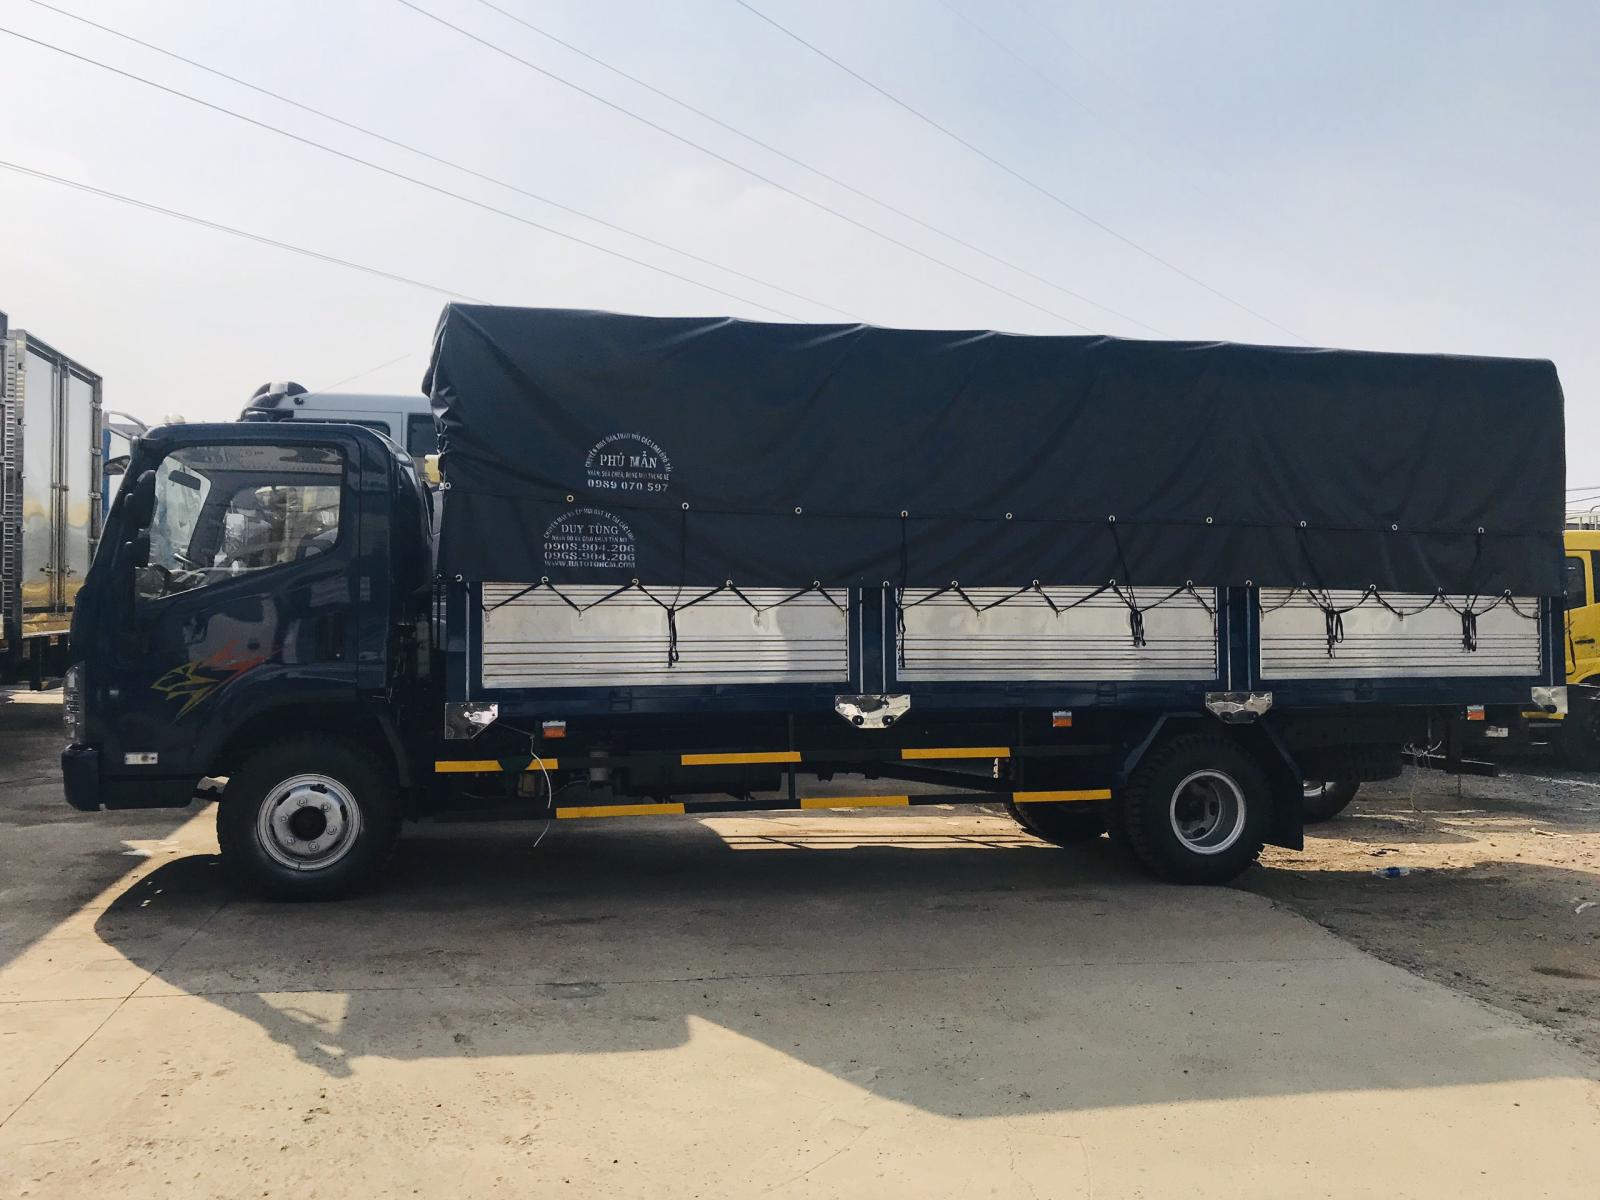 Xe tải 5 tấn - dưới 10 tấn 2017 - Hyundai 8 tấn, thùng dài 6.3 mét, bán trả góp trên toàn quốc